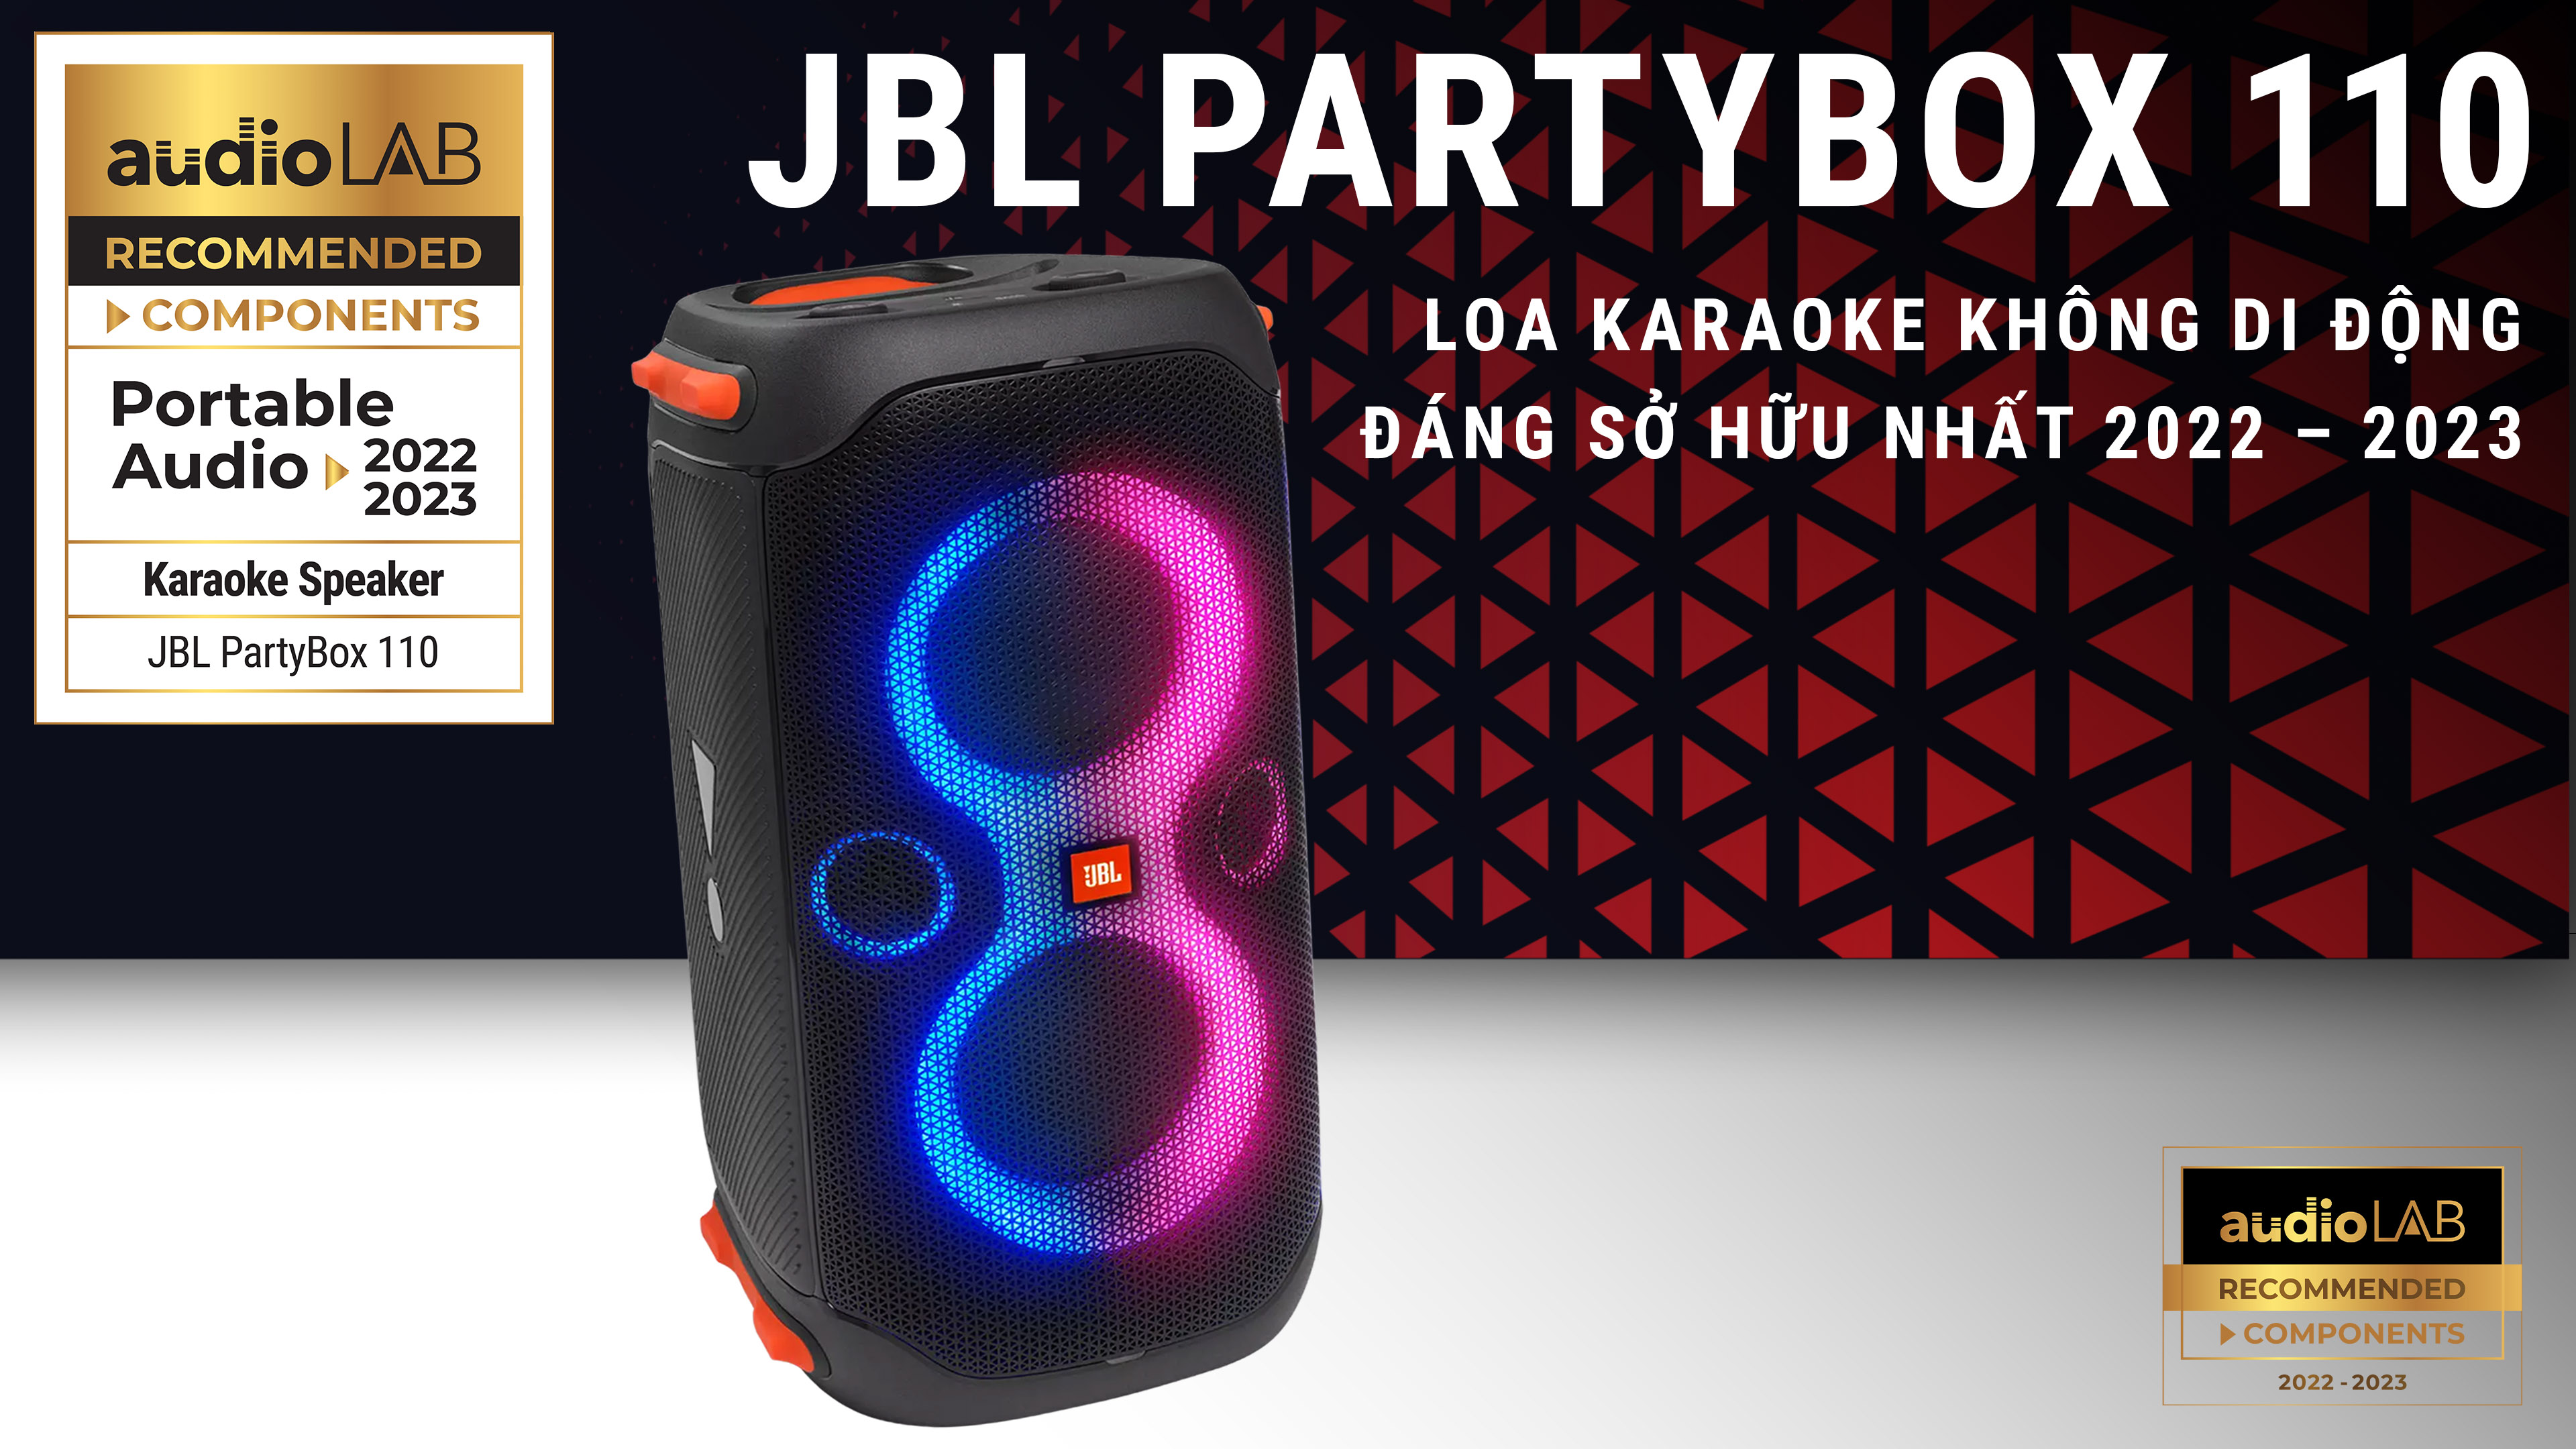 [Audio LAB Recommended] JBL Party Box 110 – Loa karaoke không dây đáng sở hữu nhất năm 2022 - 2023